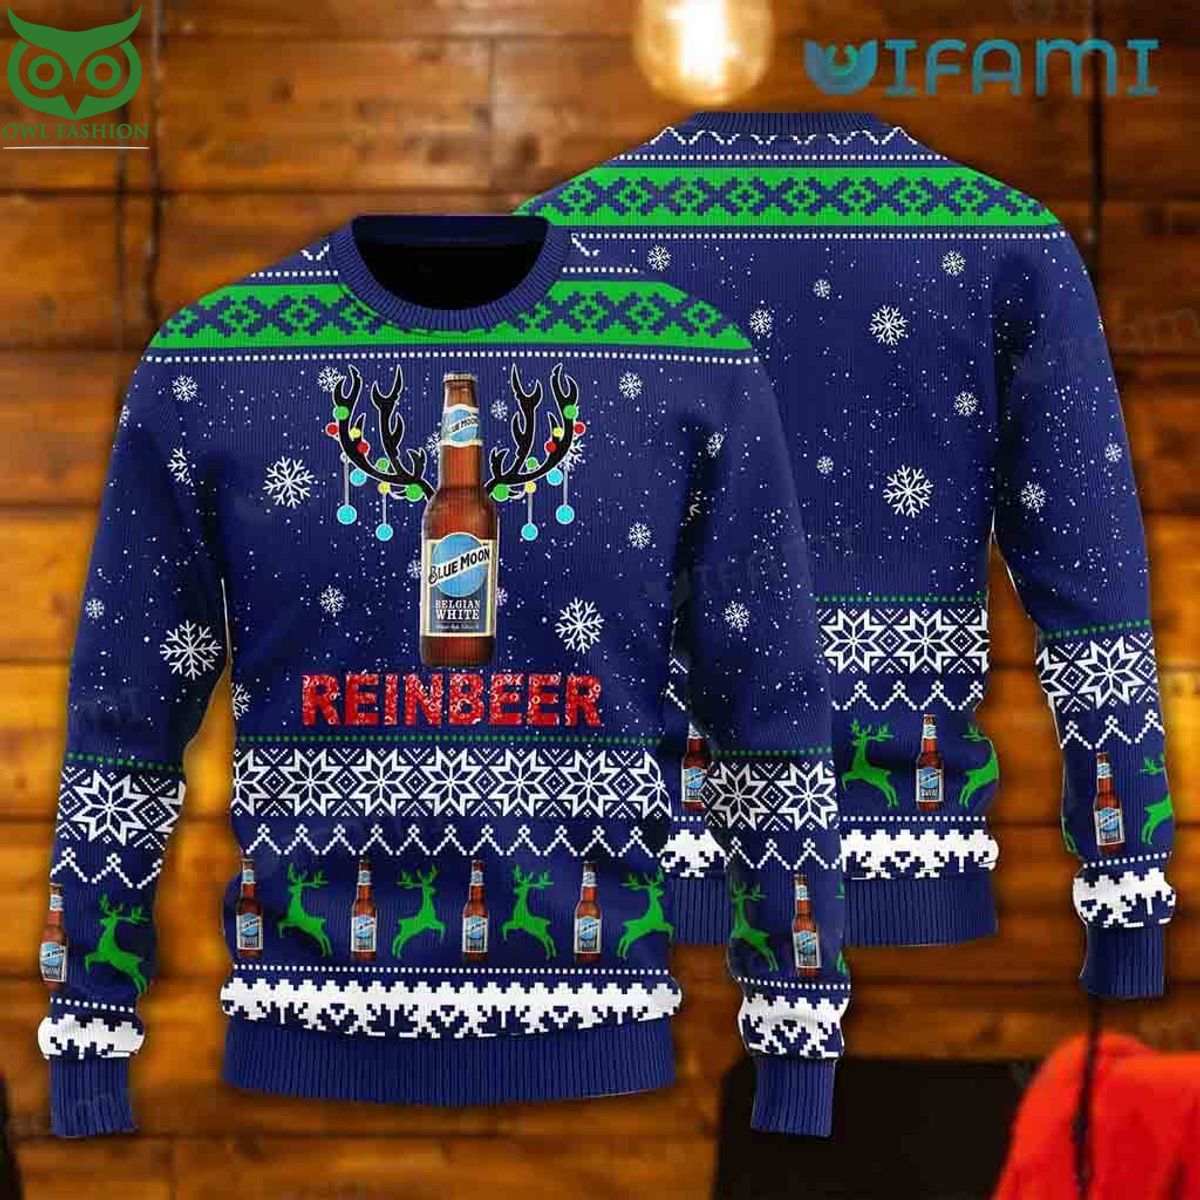 blue moon beer ugly sweater bottle reinbeer christmas gift for beer lovers 1 HpM26.jpg